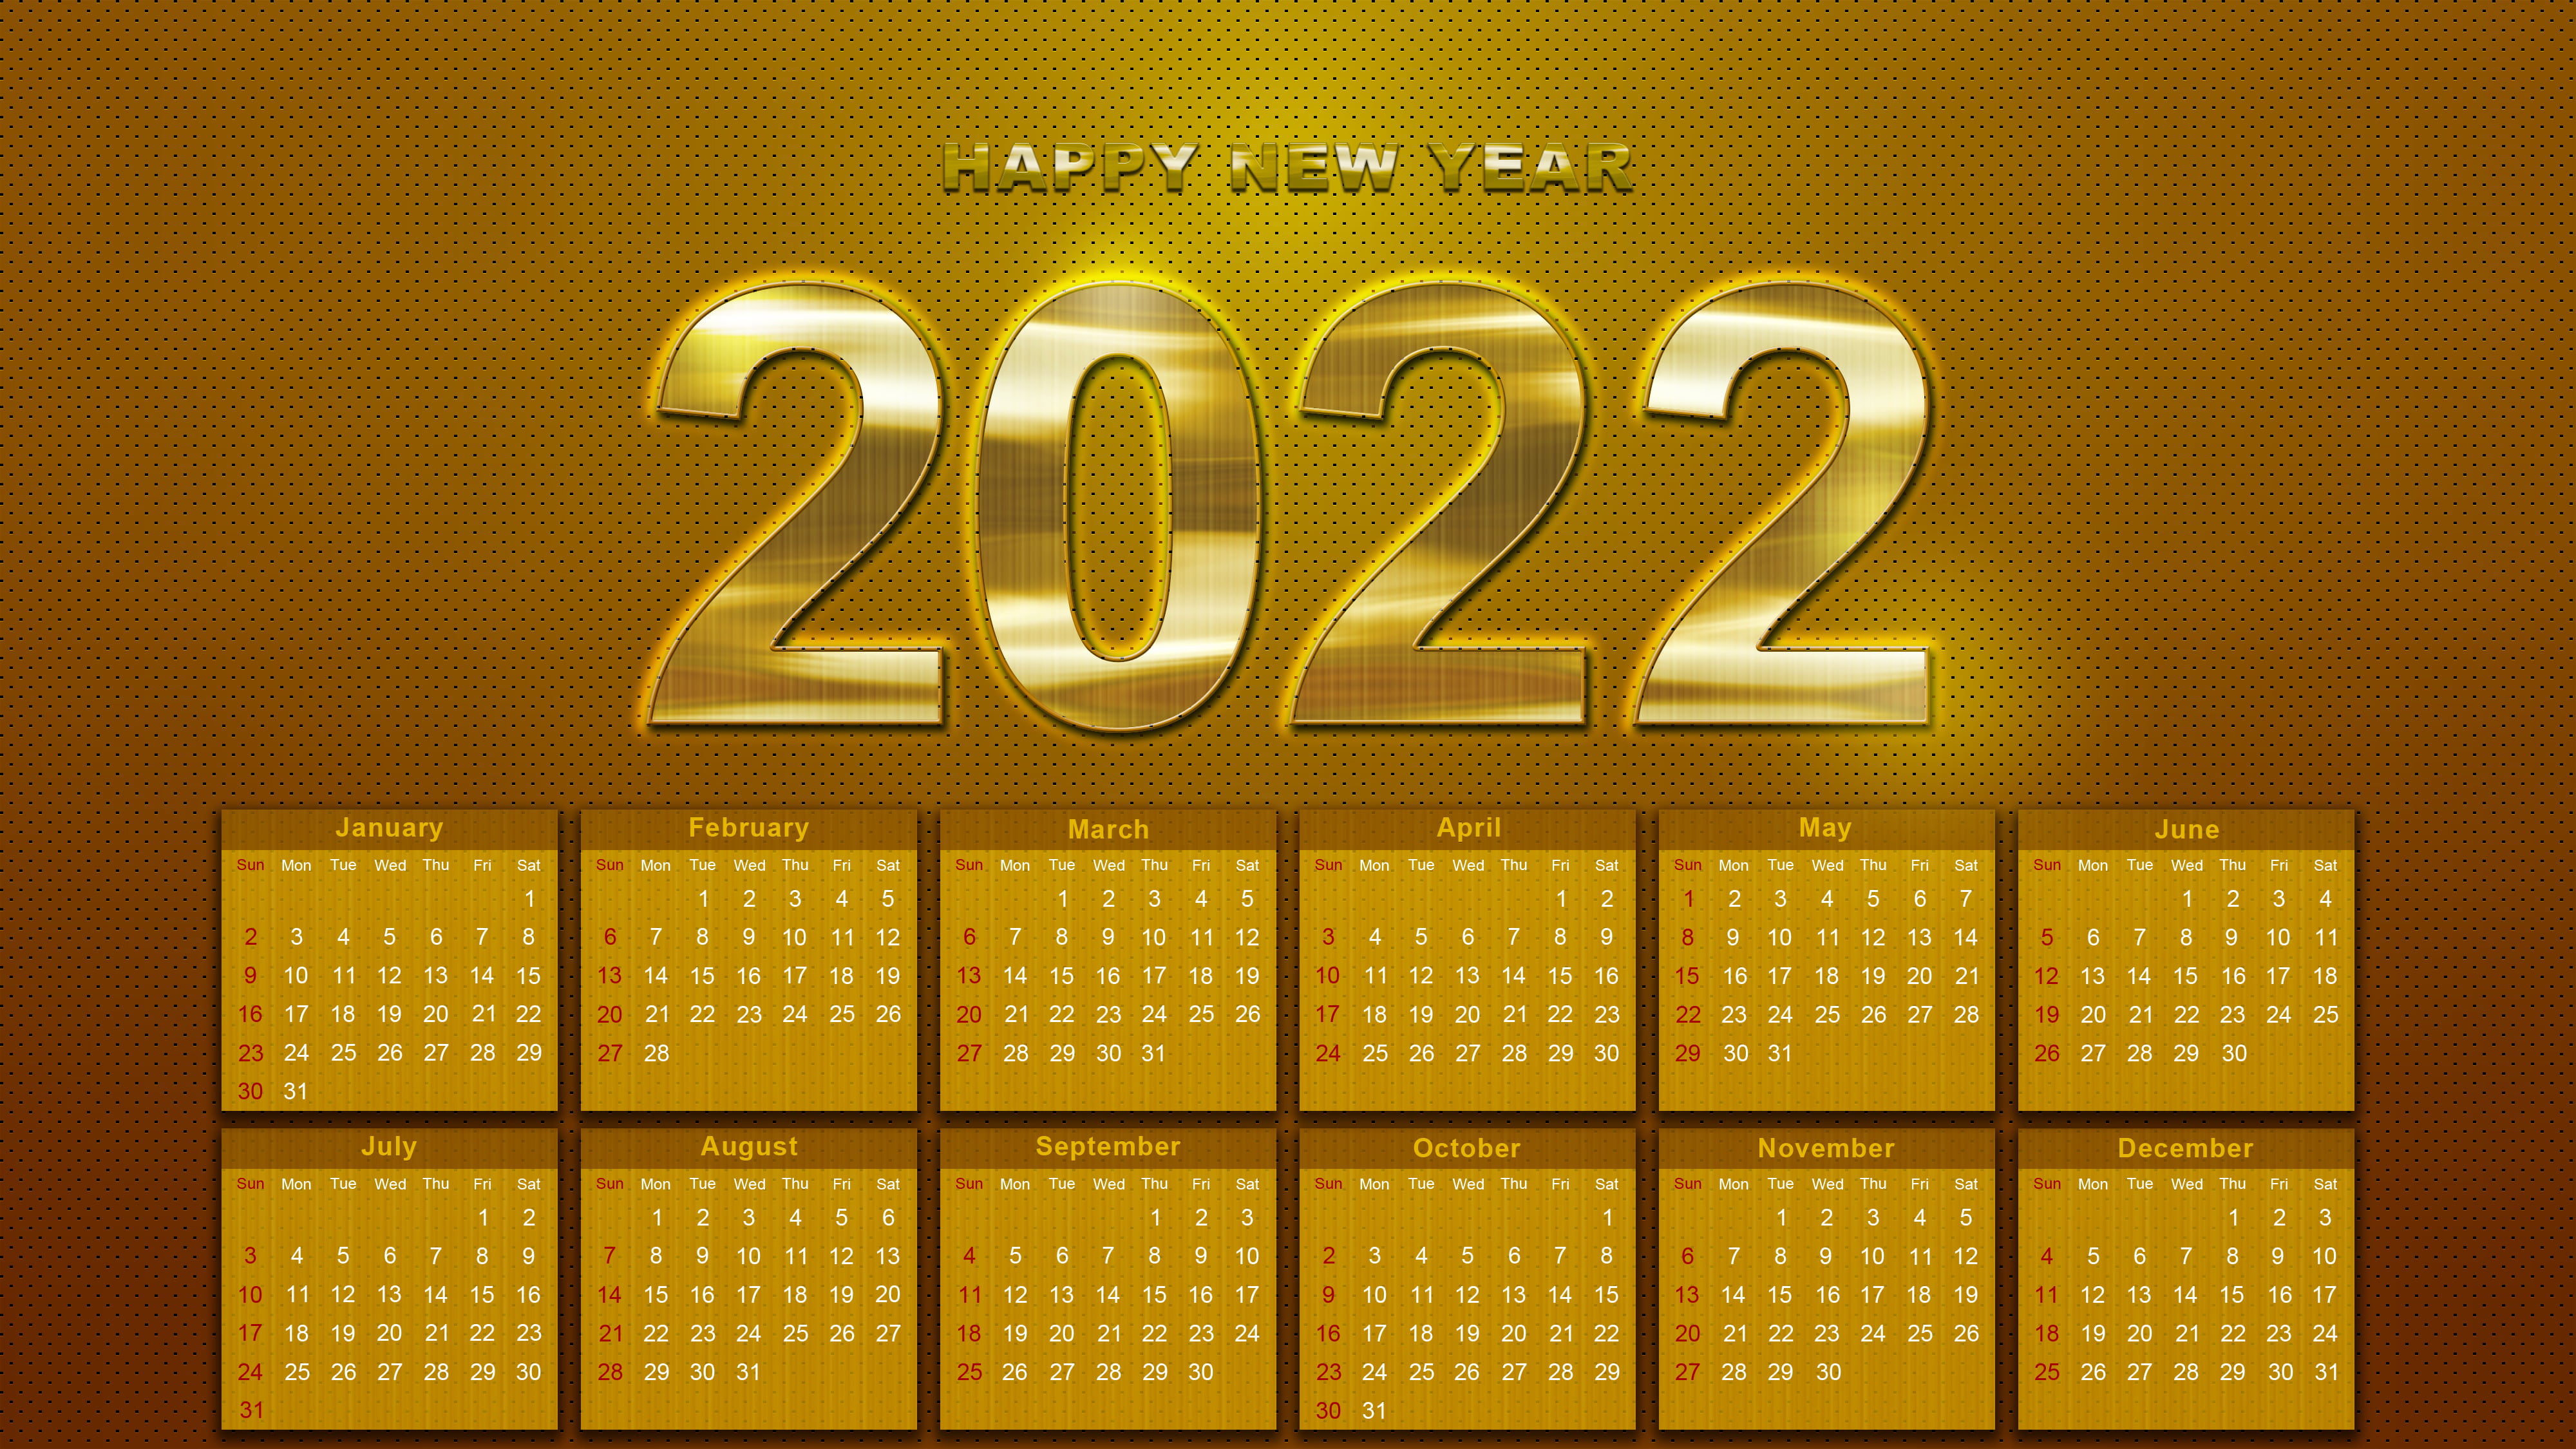 2022 (Year), Happy New Year, calendar